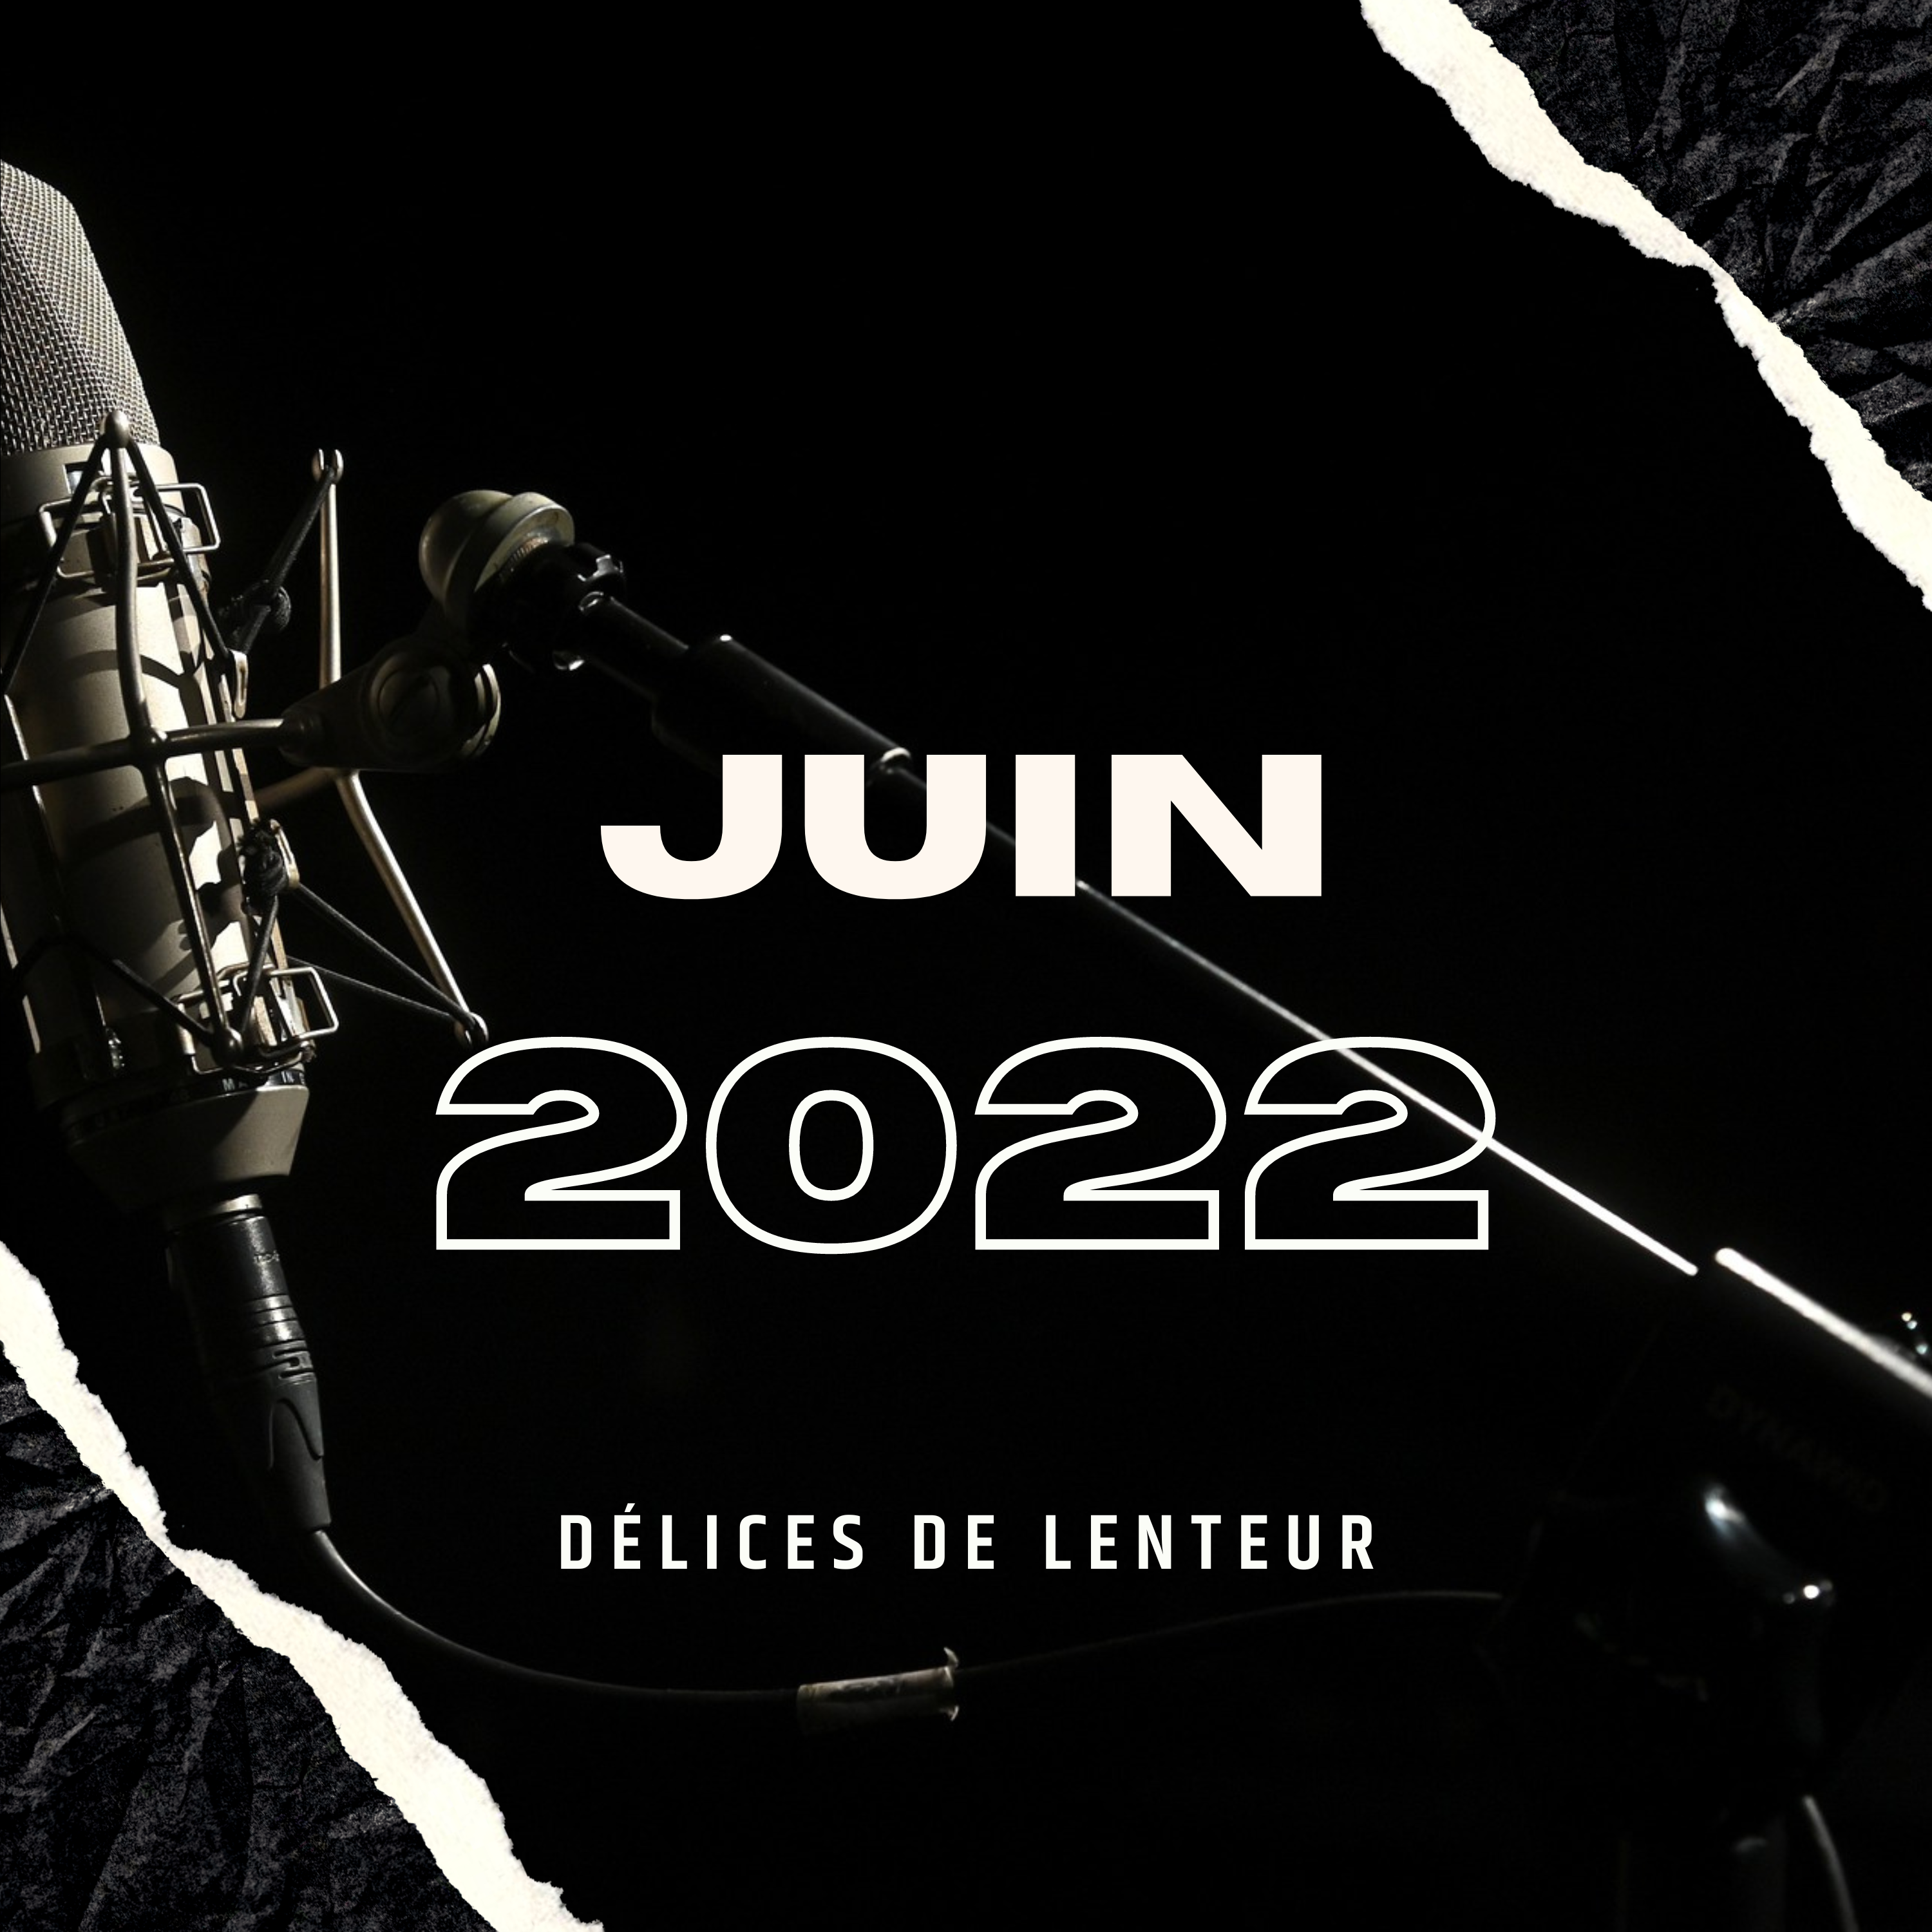 Juin 2022 — Délices de lenteur